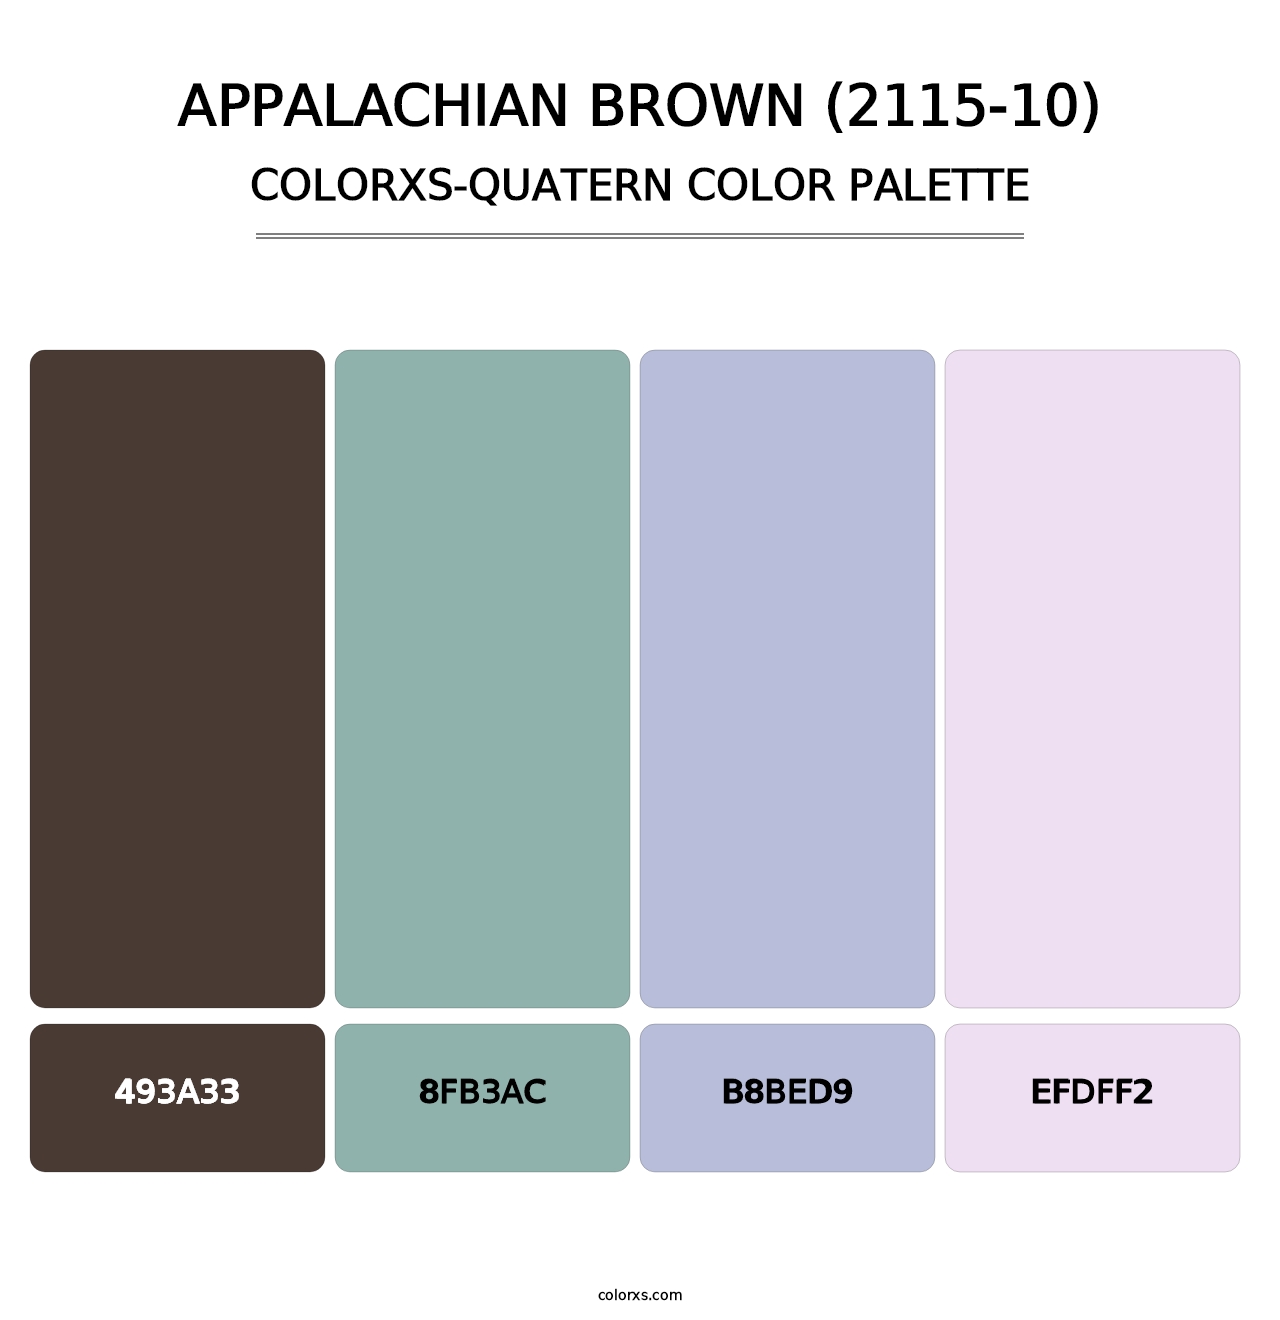 Appalachian Brown (2115-10) - Colorxs Quatern Palette